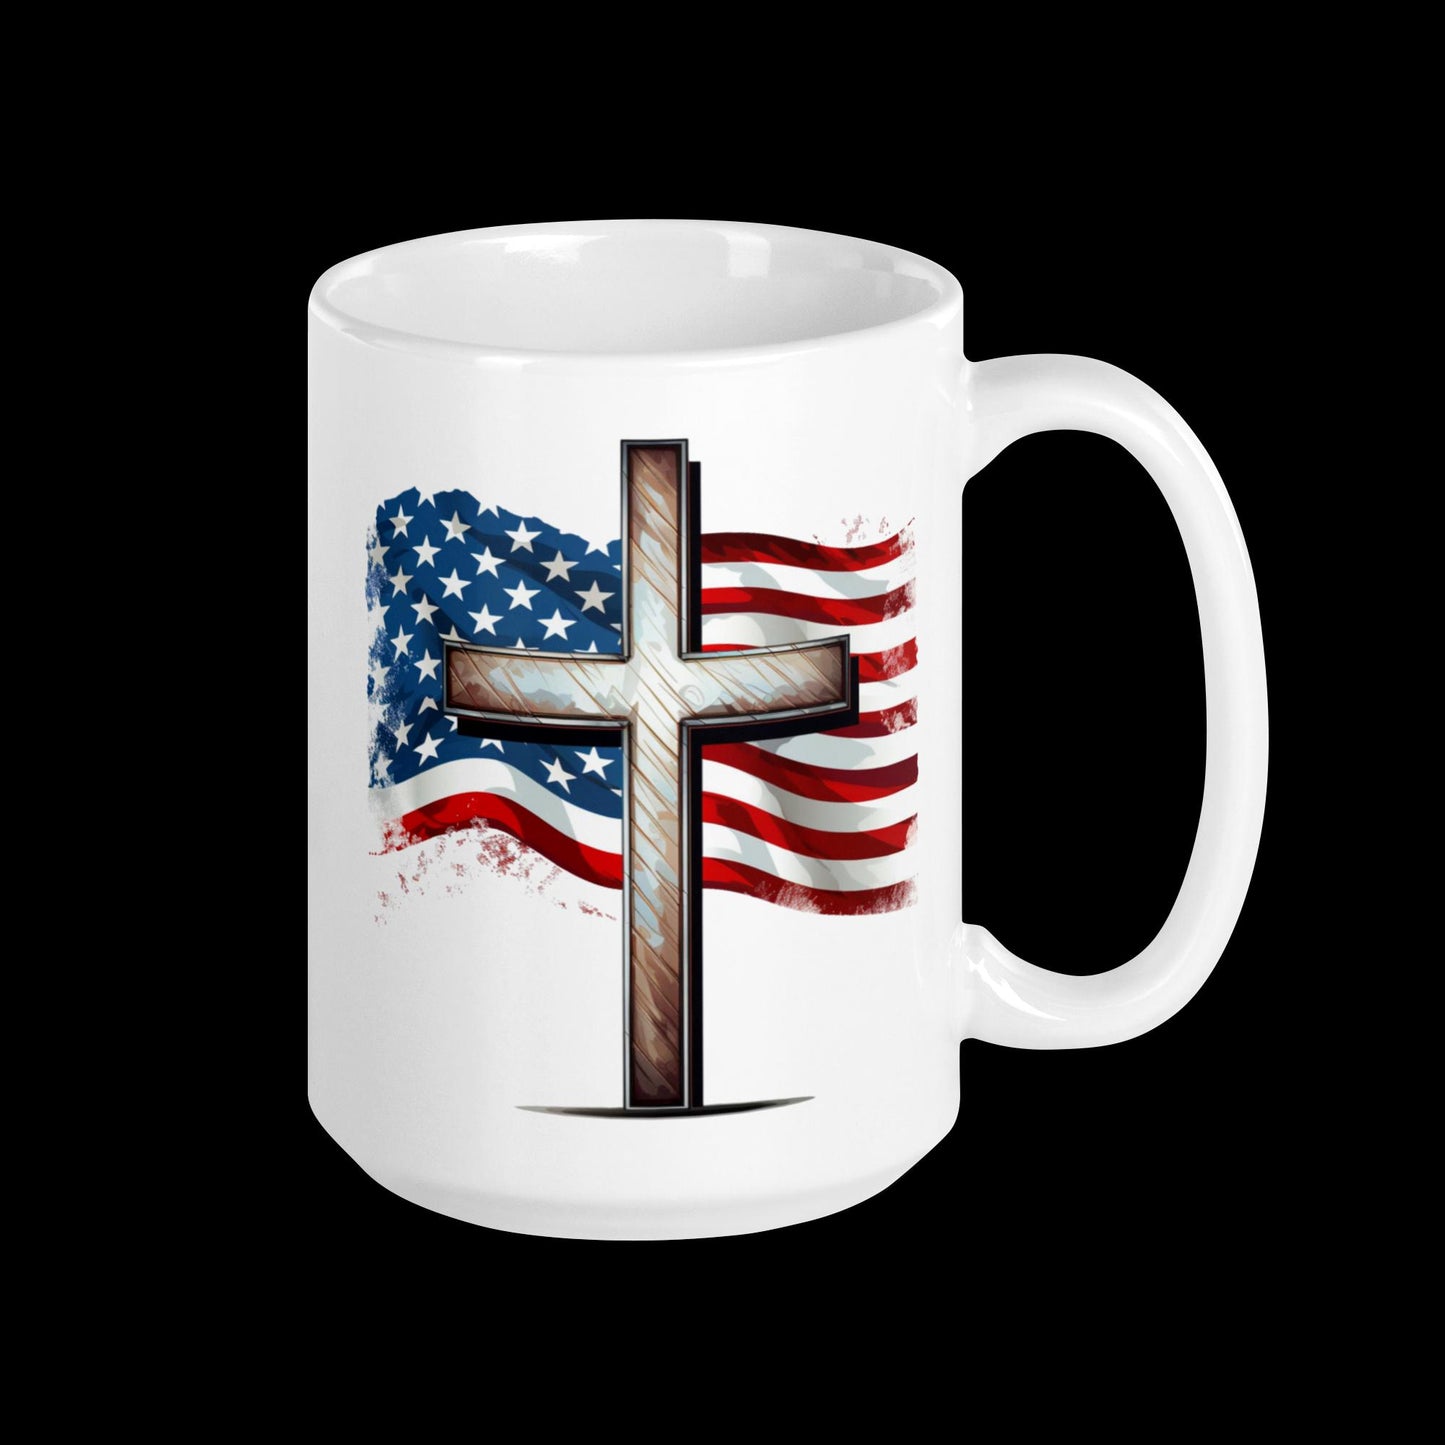 Cross & American Flag Mug | Christian Mug  | Easter Gift  | 4th of July | Patriotic USA | Western Cross Mug Design